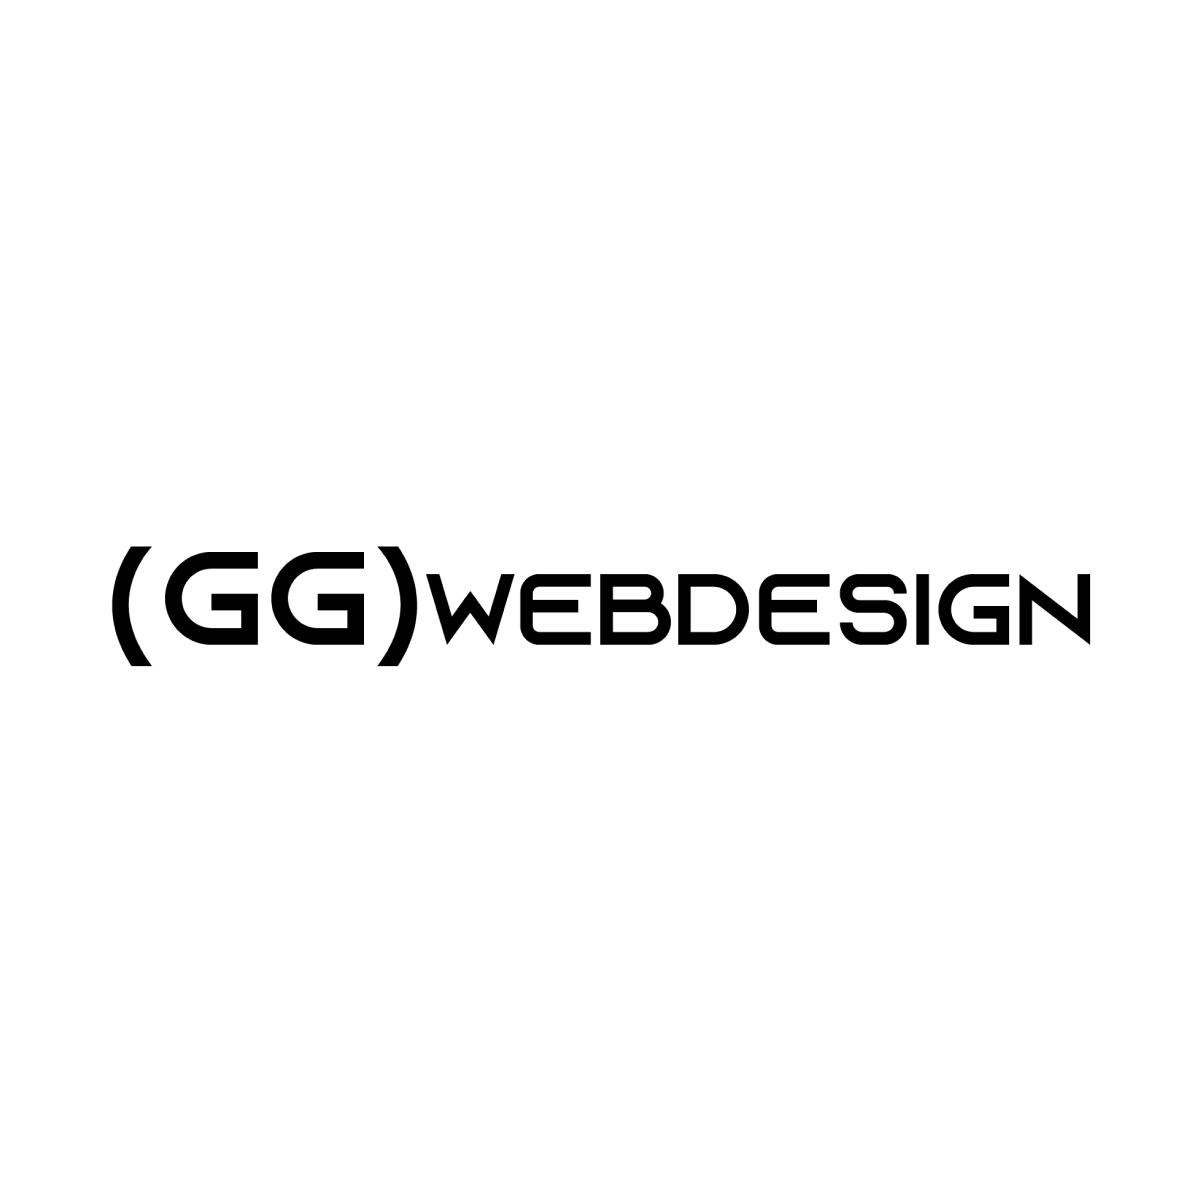 Pozycjonowanie stron internetowych  GGwebdesign, Wejherowo, pomorskie